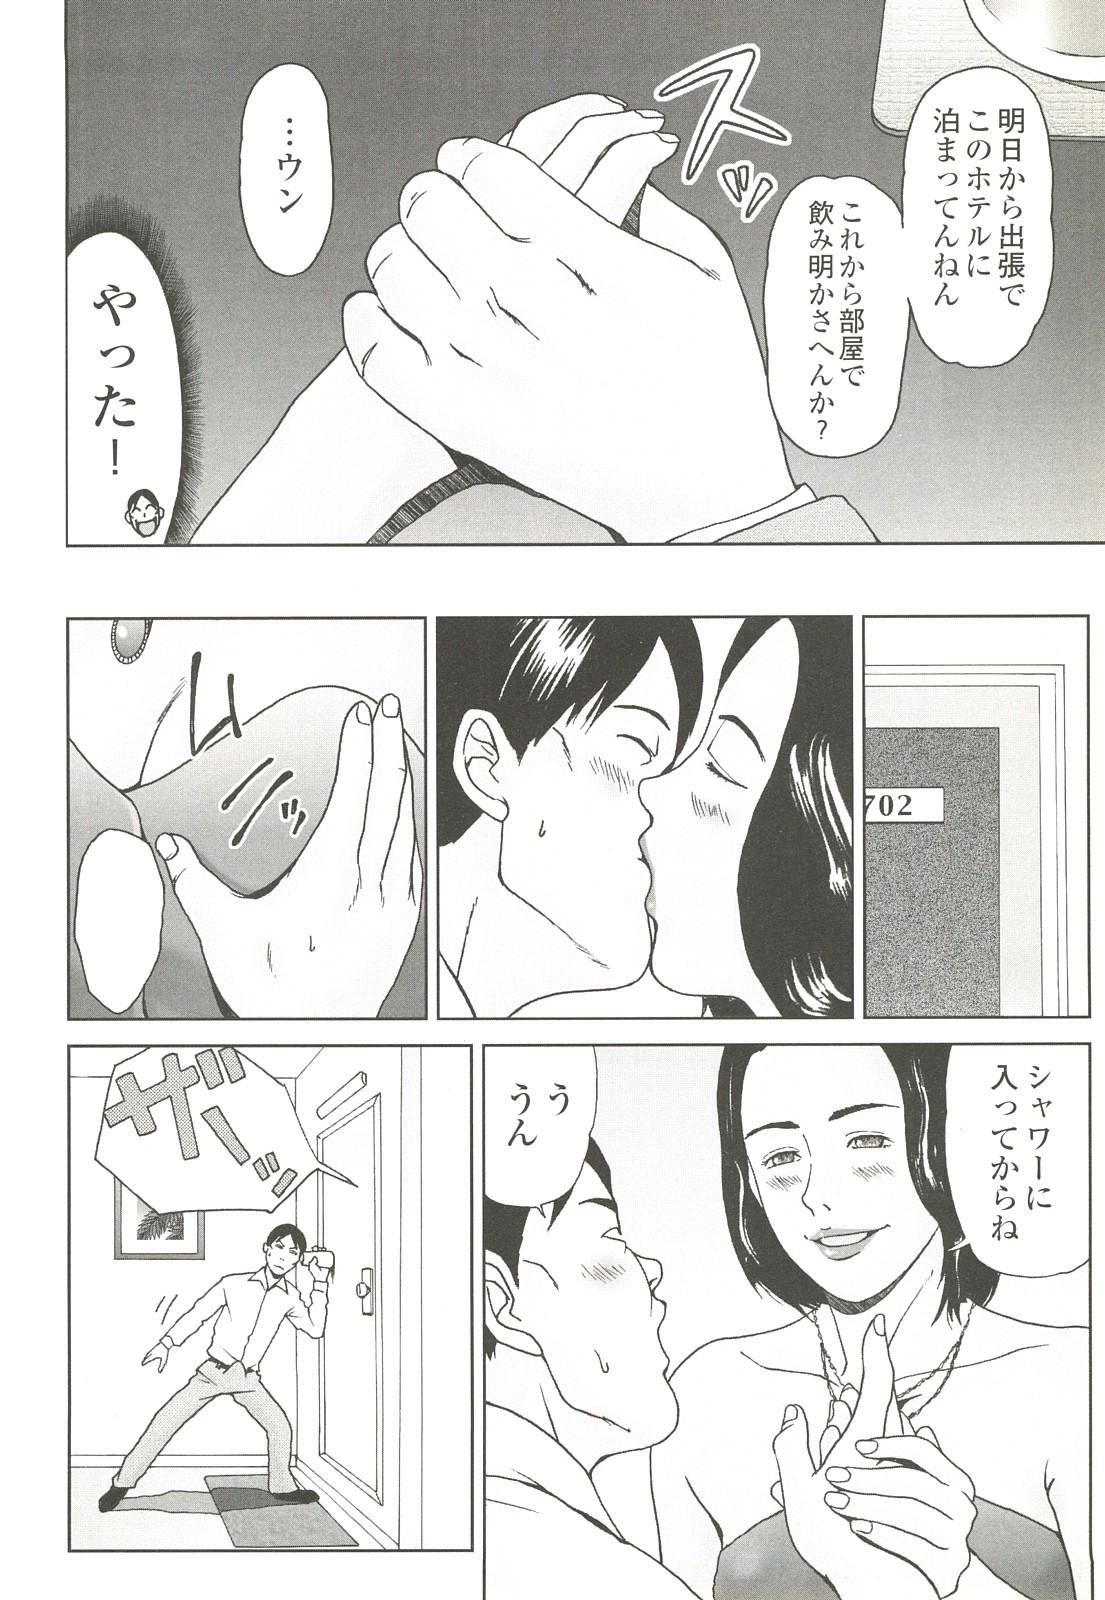 コミック裏モノJAPAN Vol.18 今井のりたつスペシャル号 251